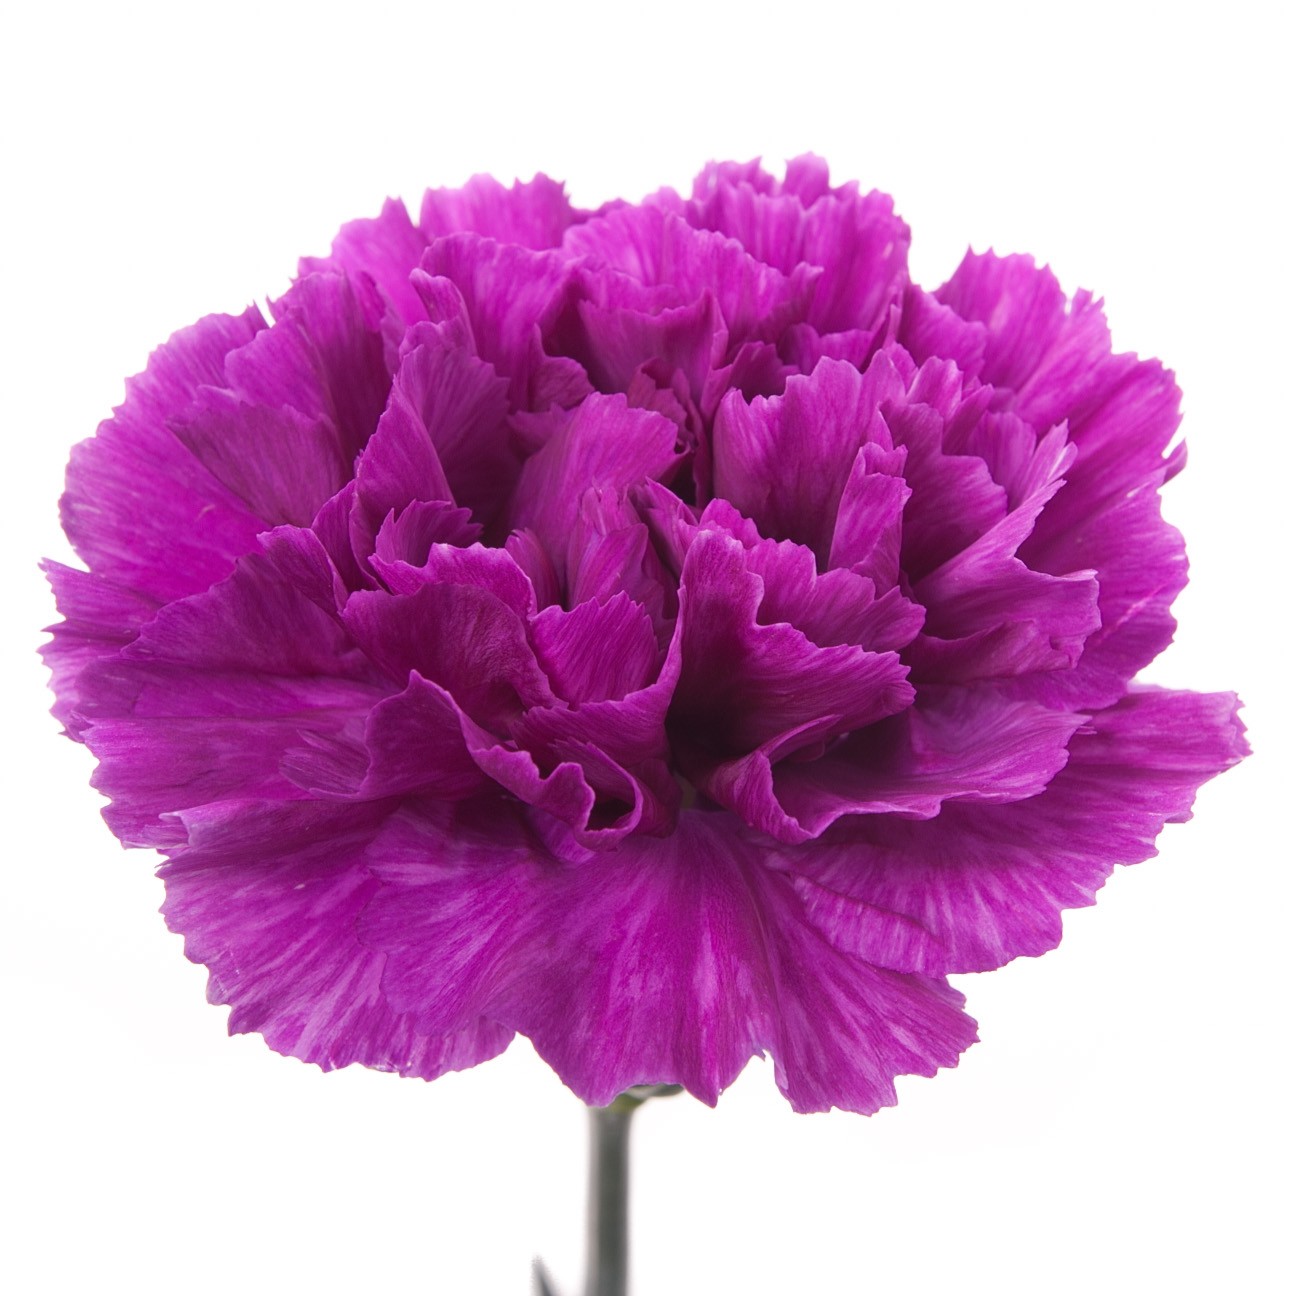 Tổng hợp hình ảnh hoa cẩm chướng tím đẹp nhất - [Kích thước hình ảnh: 1310x1296 px]